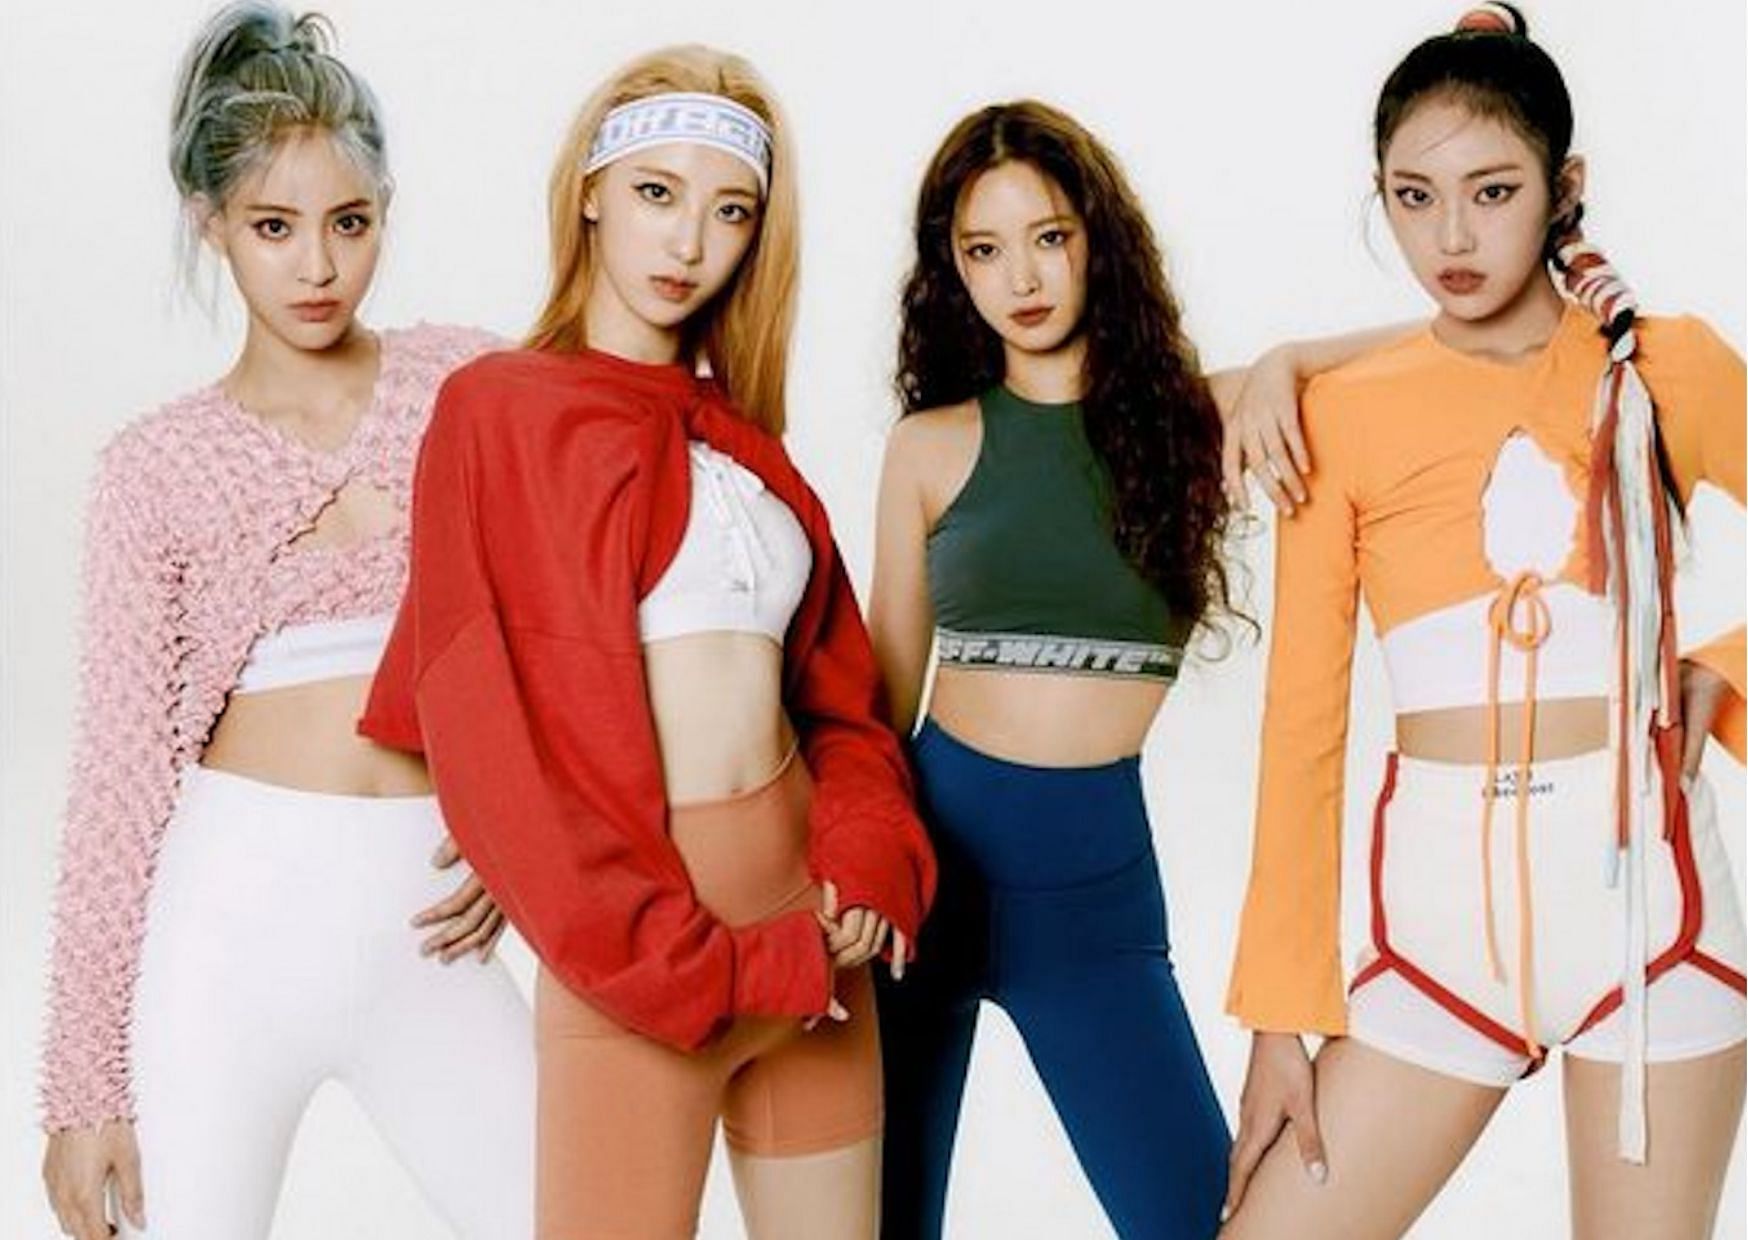 Rookie girl group H1-KEY (Image via Instagram)